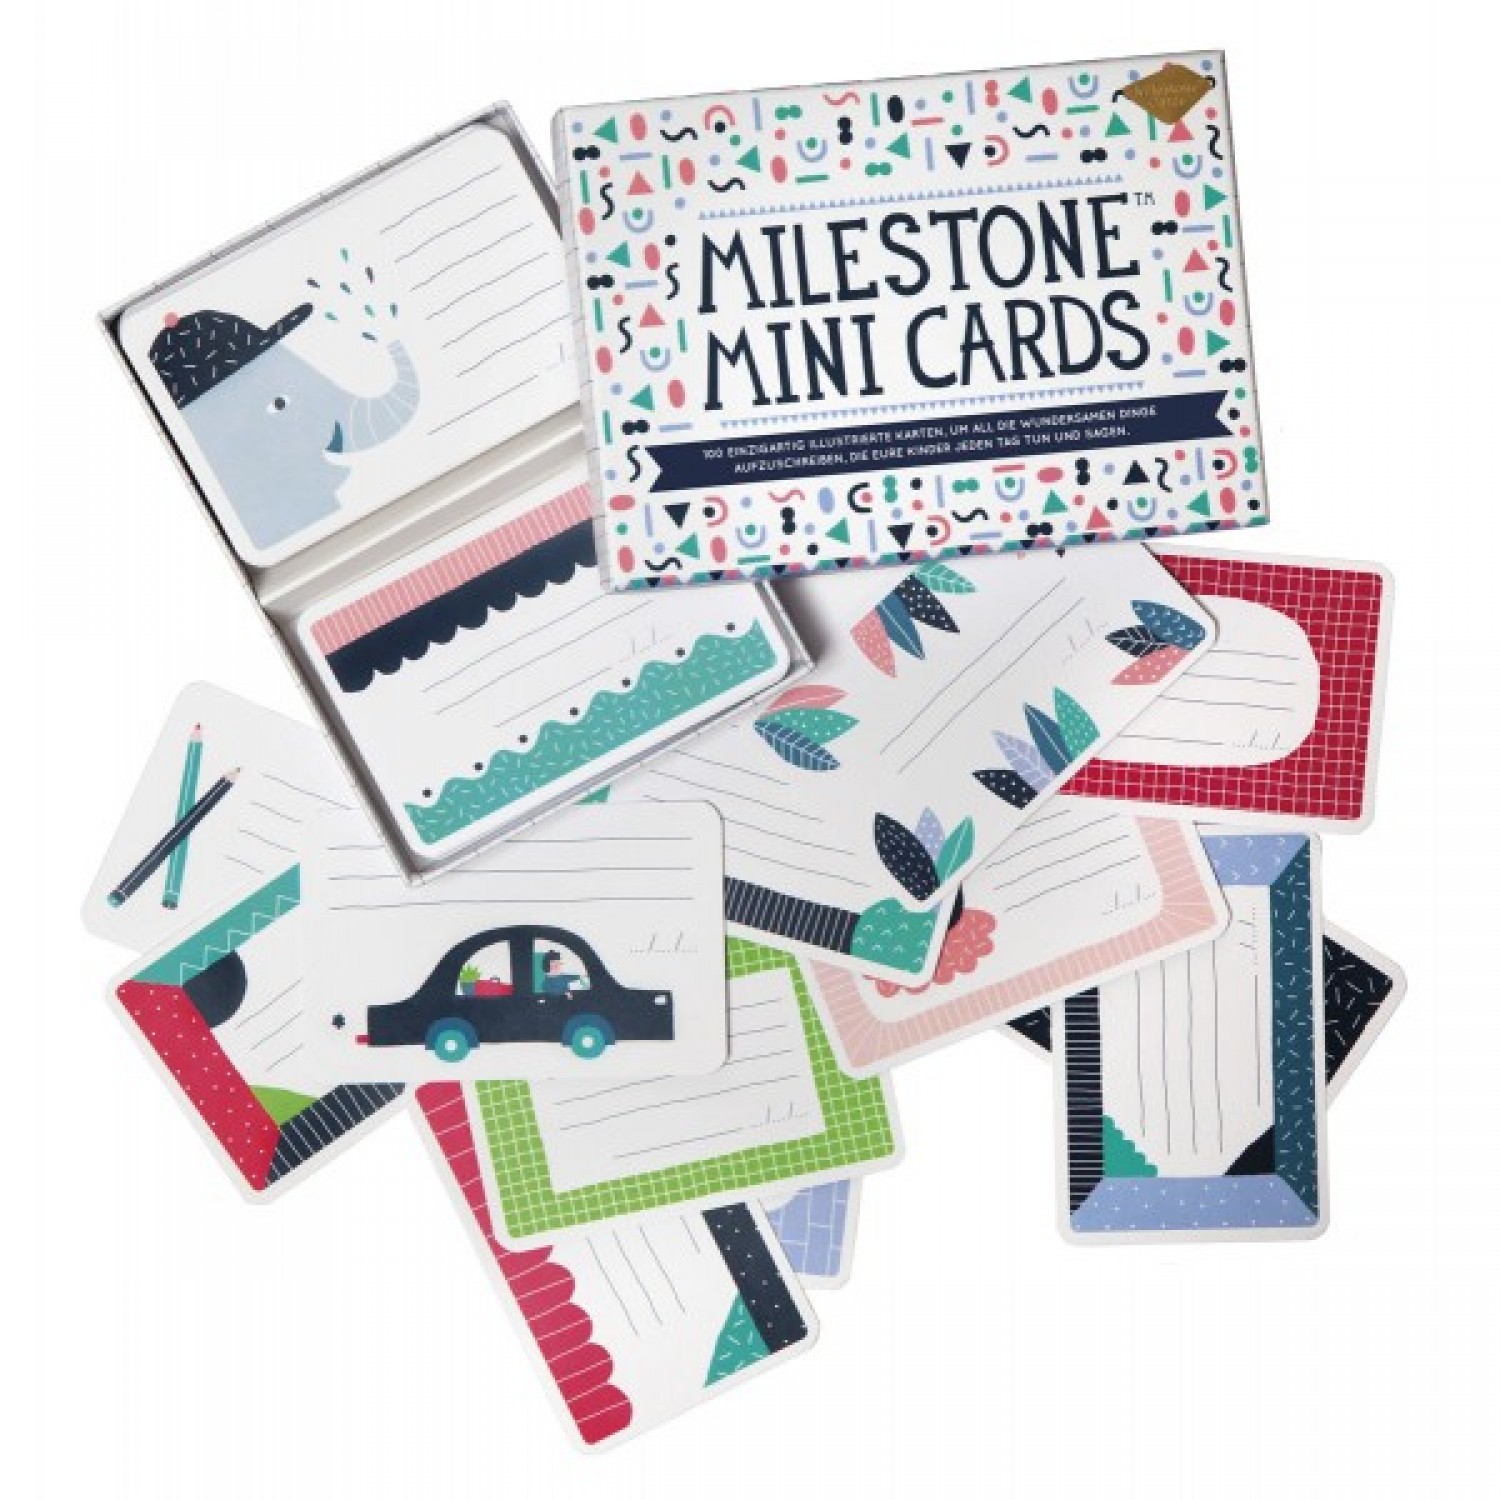 Milestone Mini Cards Box in Deutsch auf Öko Papier